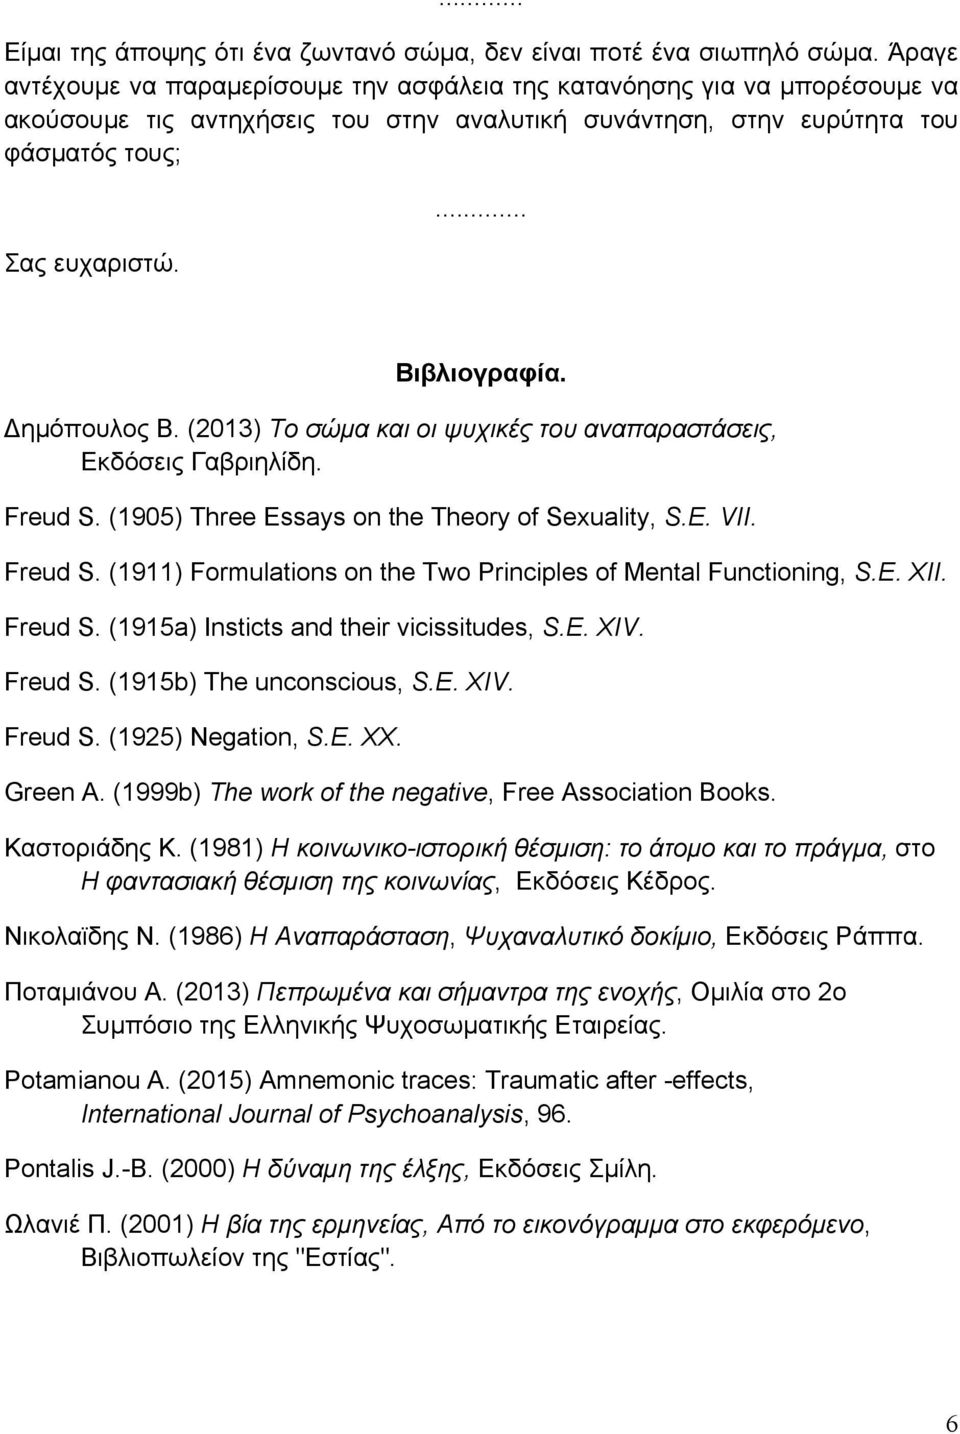 Δηµόπουλος Β. (2013) Το σώµα και οι ψυχικές του αναπαραστάσεις, Εκδόσεις Γαβριηλίδη. Freud S. (1905) Three Essays on the Theory of Sexuality, S.E. VII. Freud S. (1911) Formulations on the Two Principles of Mental Functioning, S.